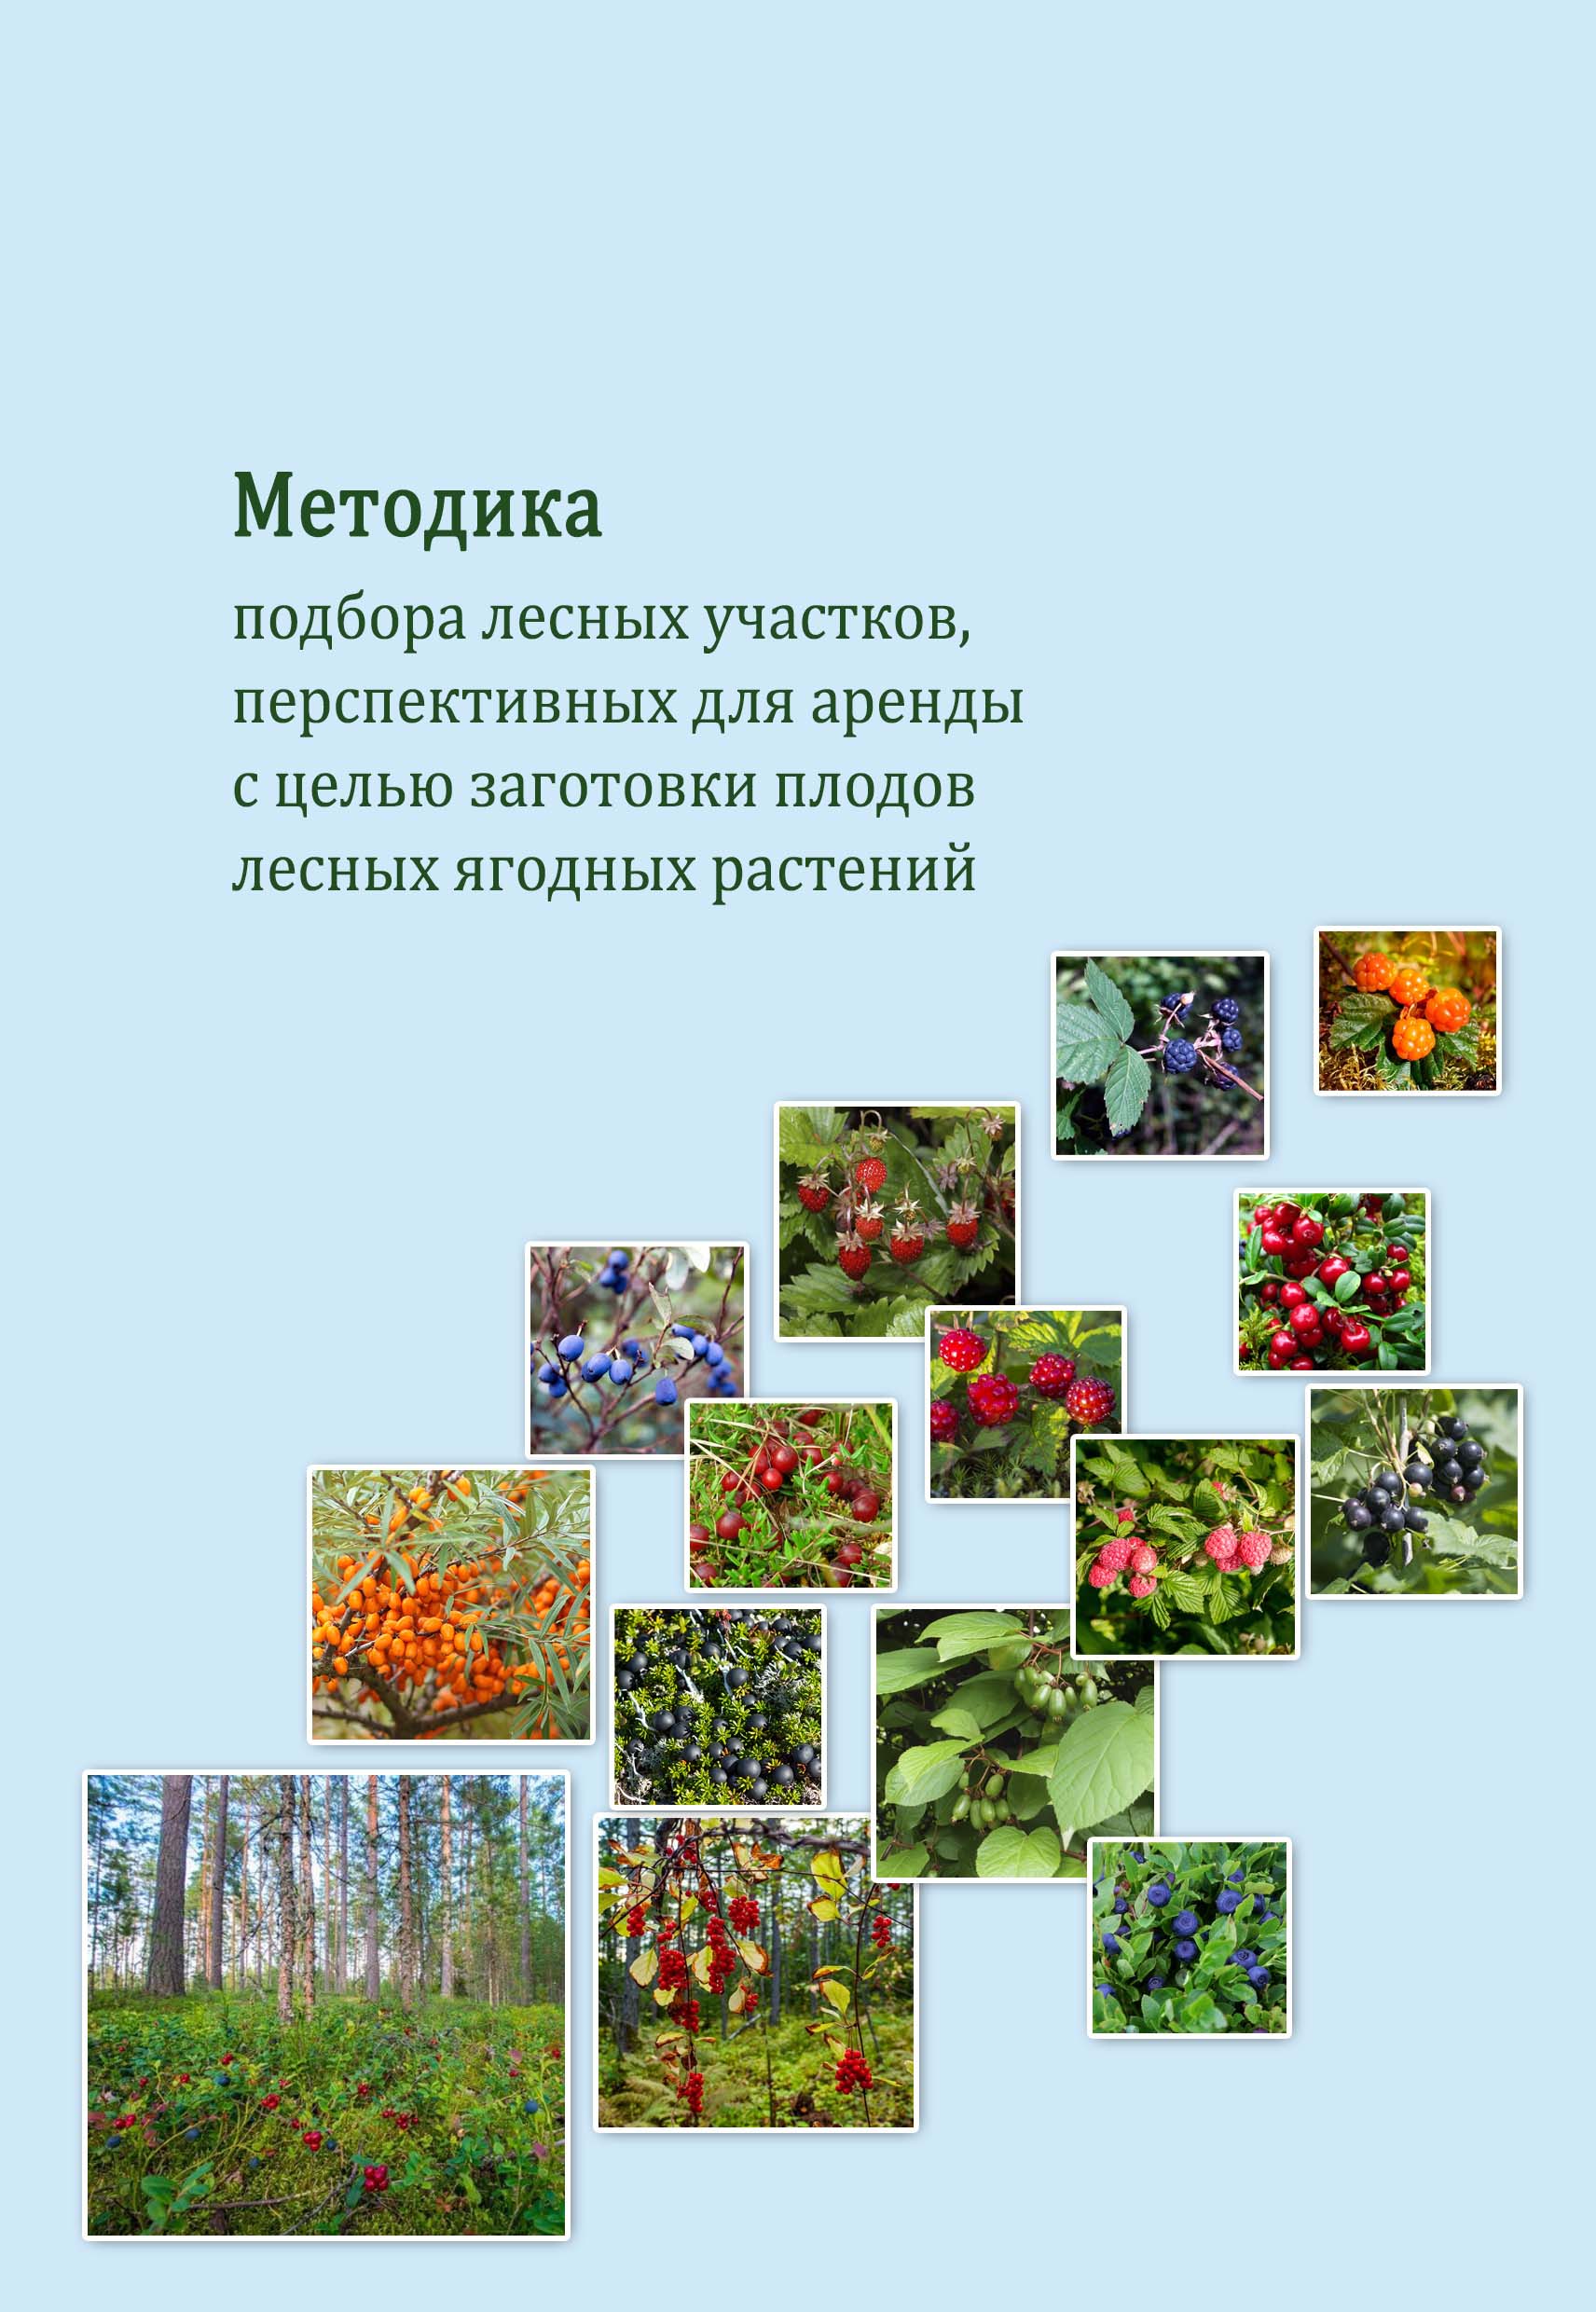 Методика подбора лесных участков, перспективных для аренды с целью заготовки плодов лесных ягодных растений